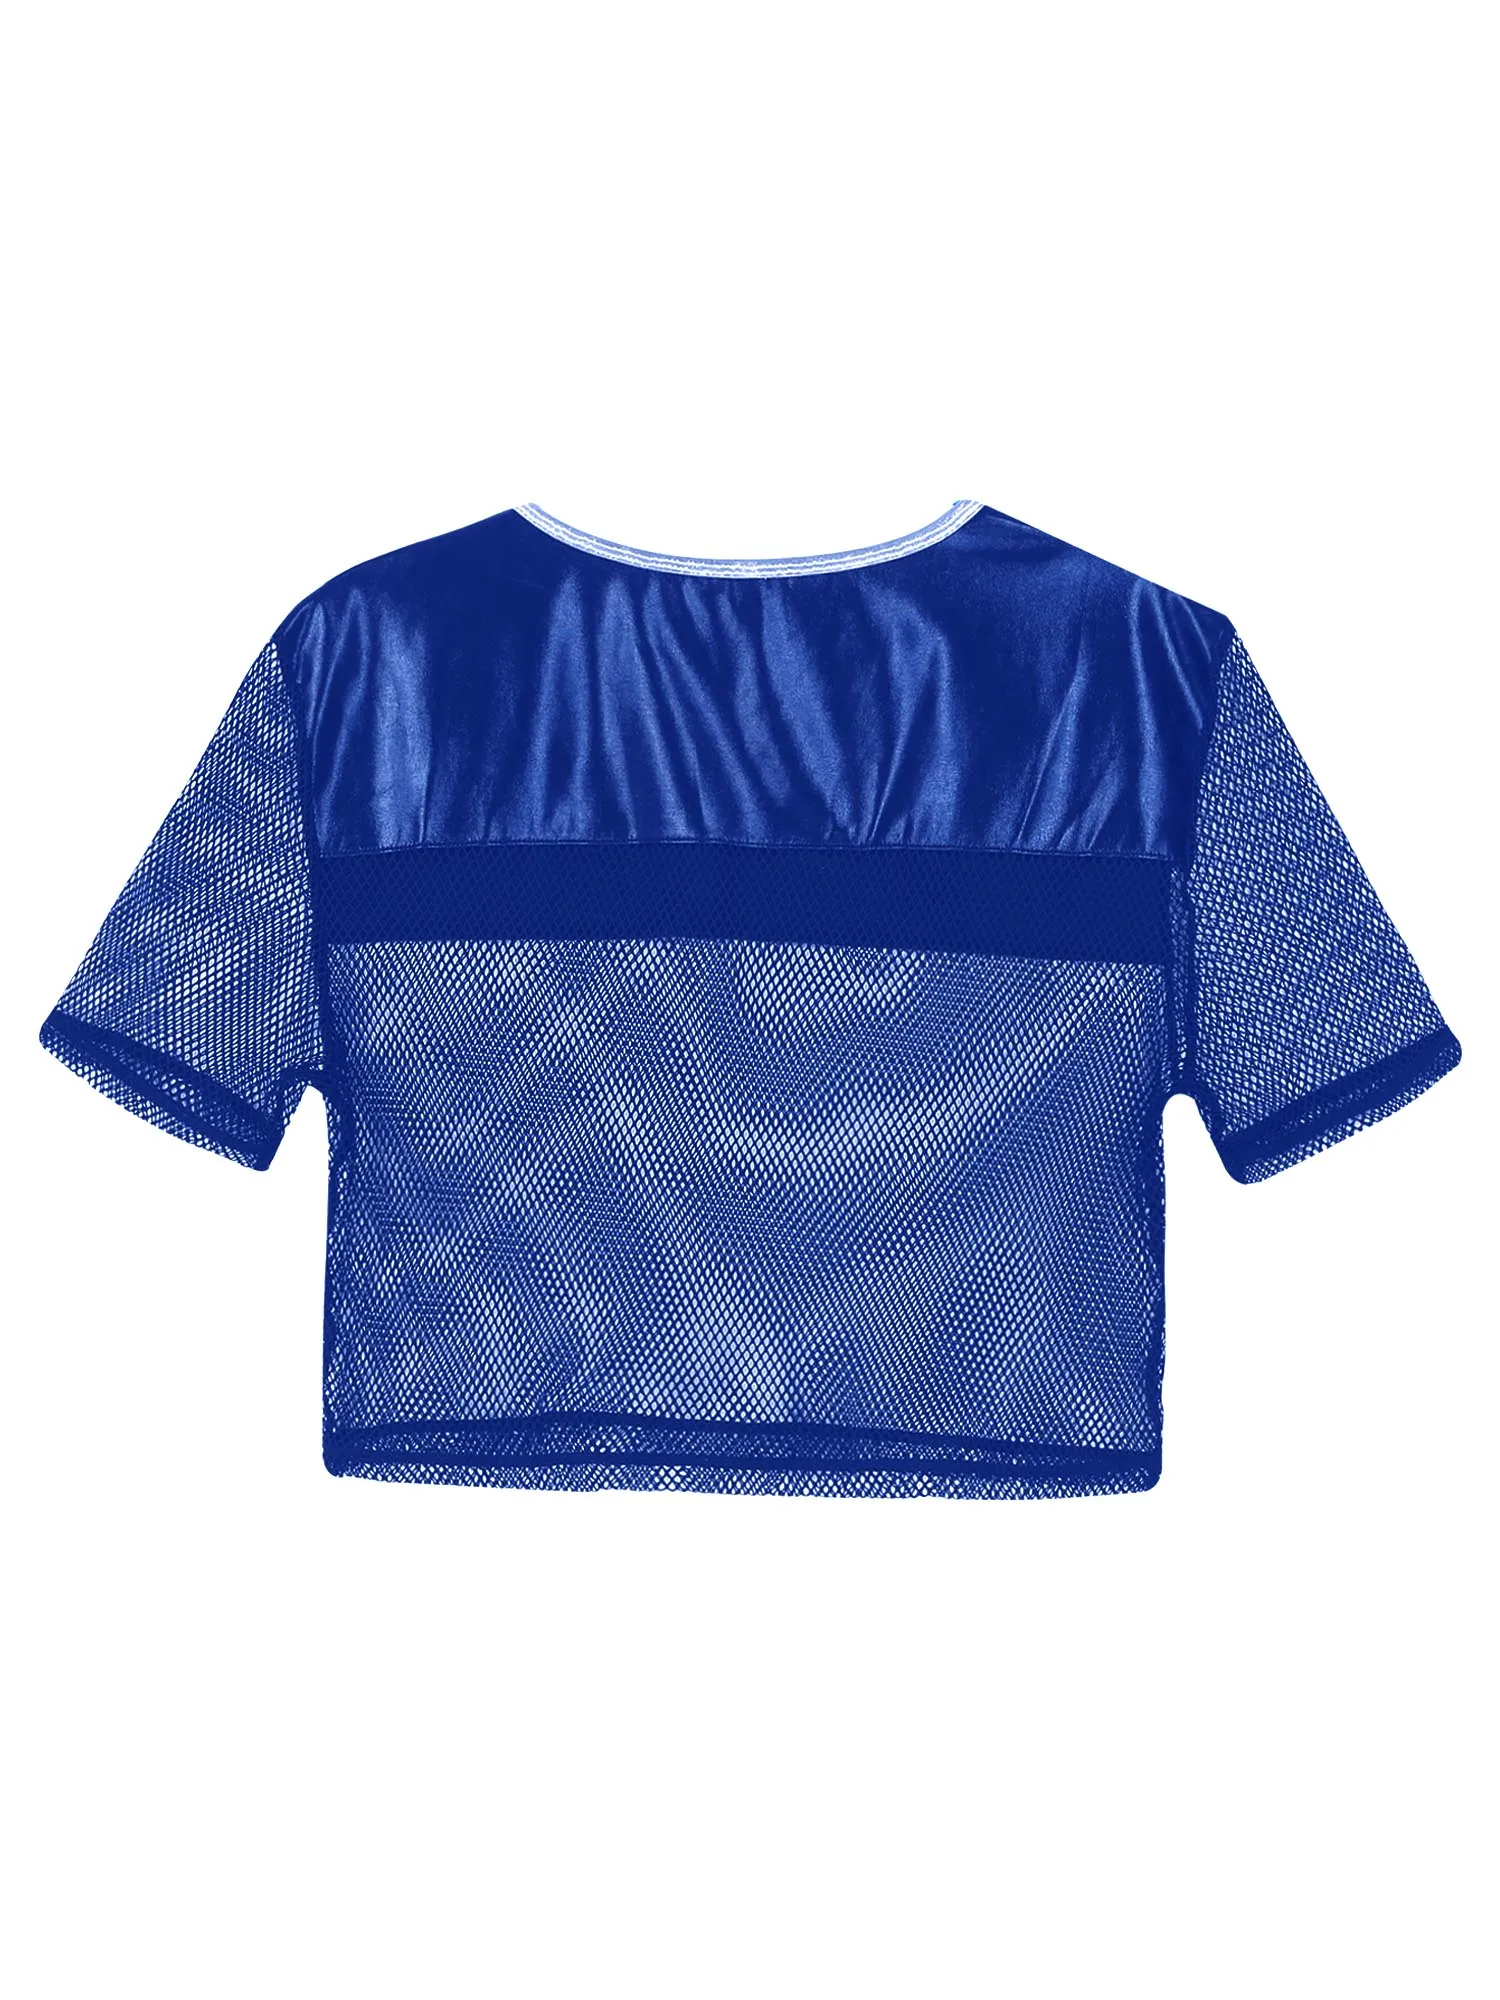 Mens de Moda Respirabil cu Maneci Scurte T-Shirt Design Mozaic HIIT T-shirt Vedea prin Plasa Mesh Crop Top Jogging, Fitness 4